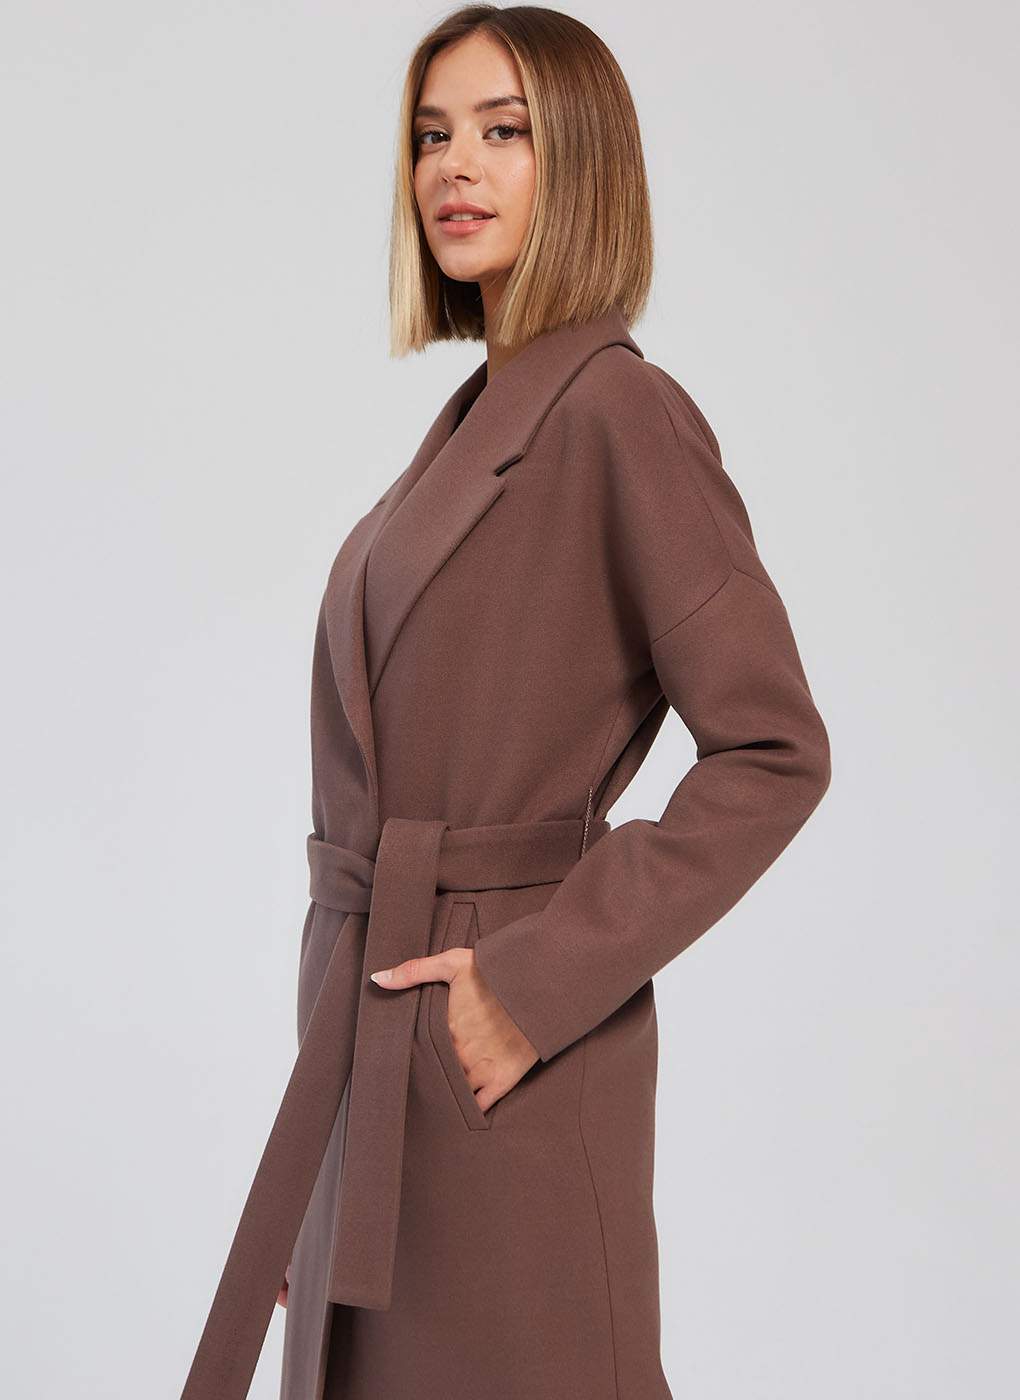 Пальто женское Giulia Rosetti 56204 коричневое 42 RU